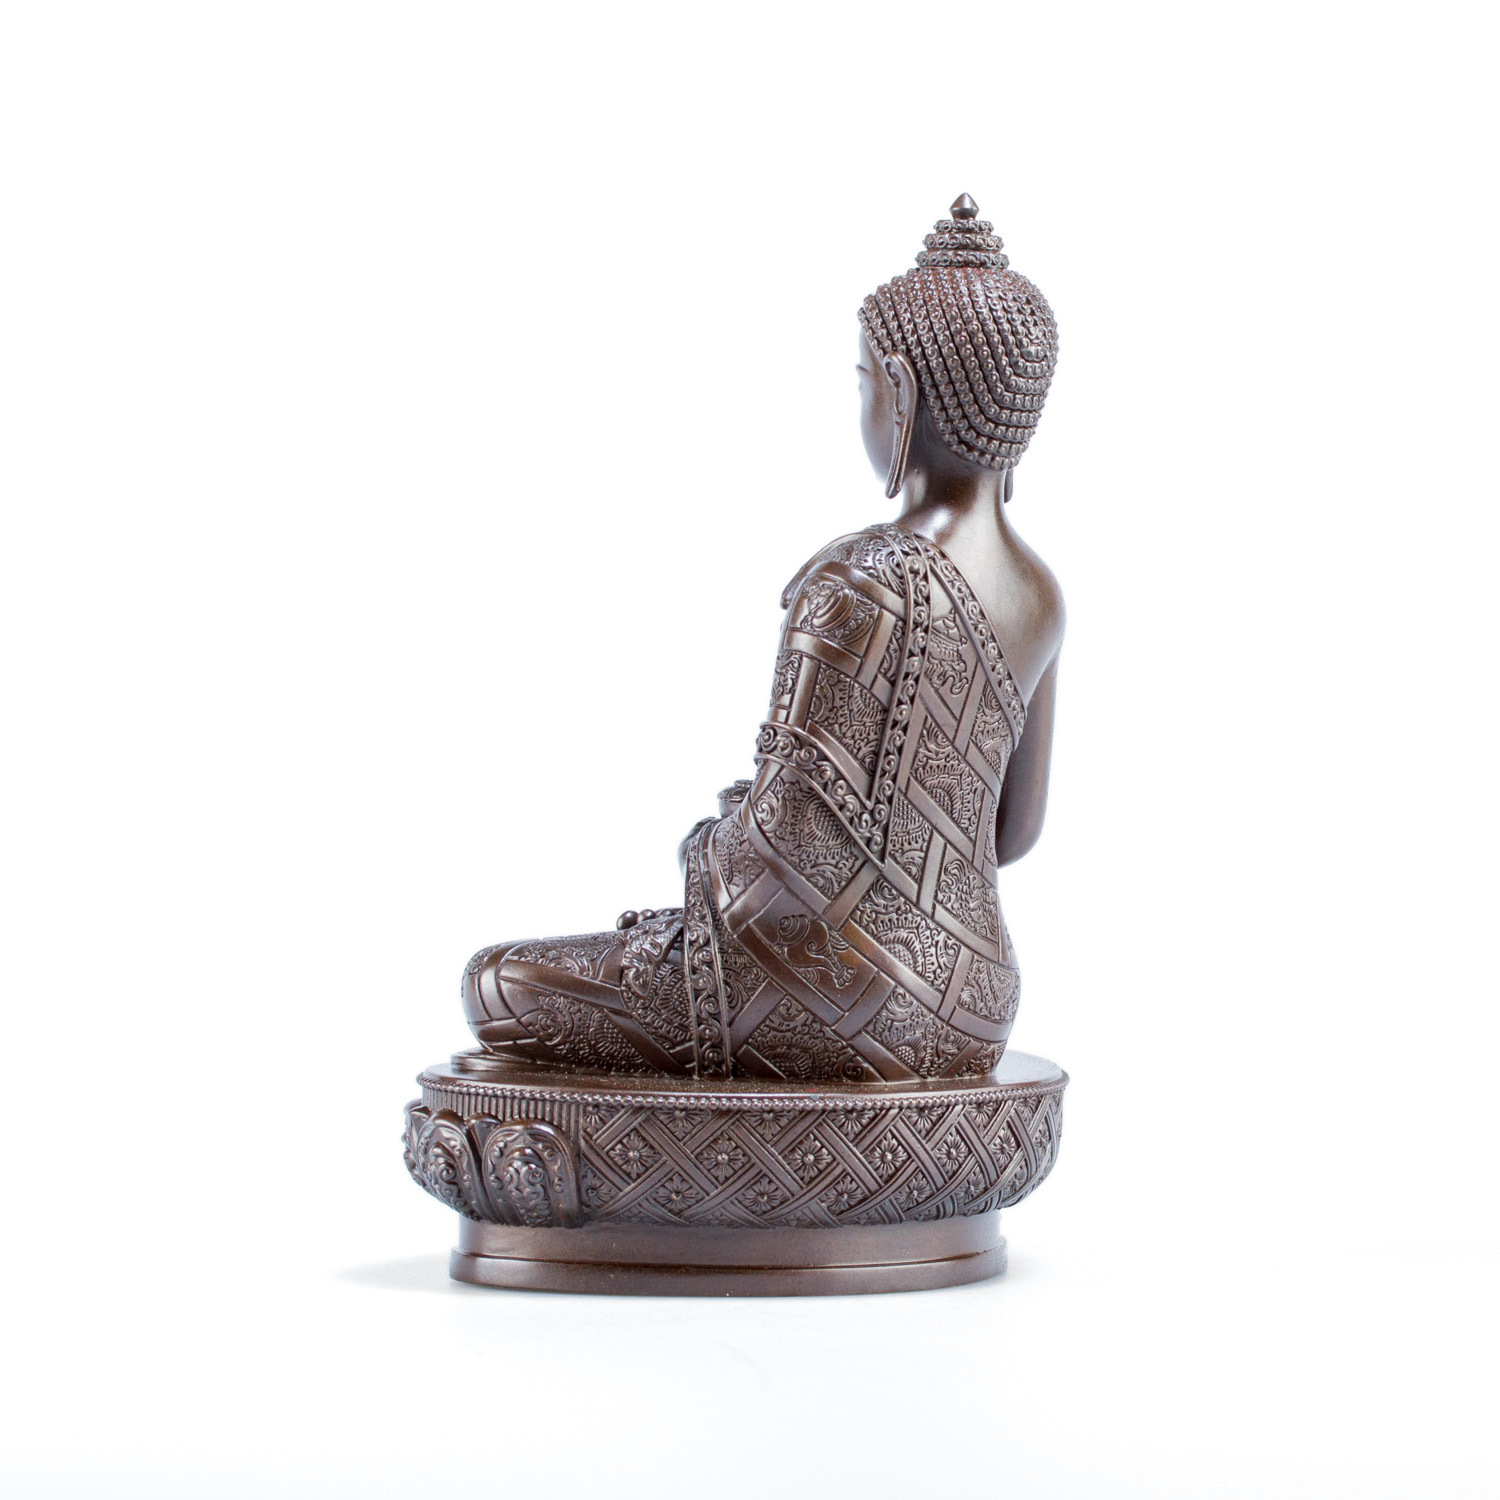 Статуэтка Будды Амитабхи, 15 см